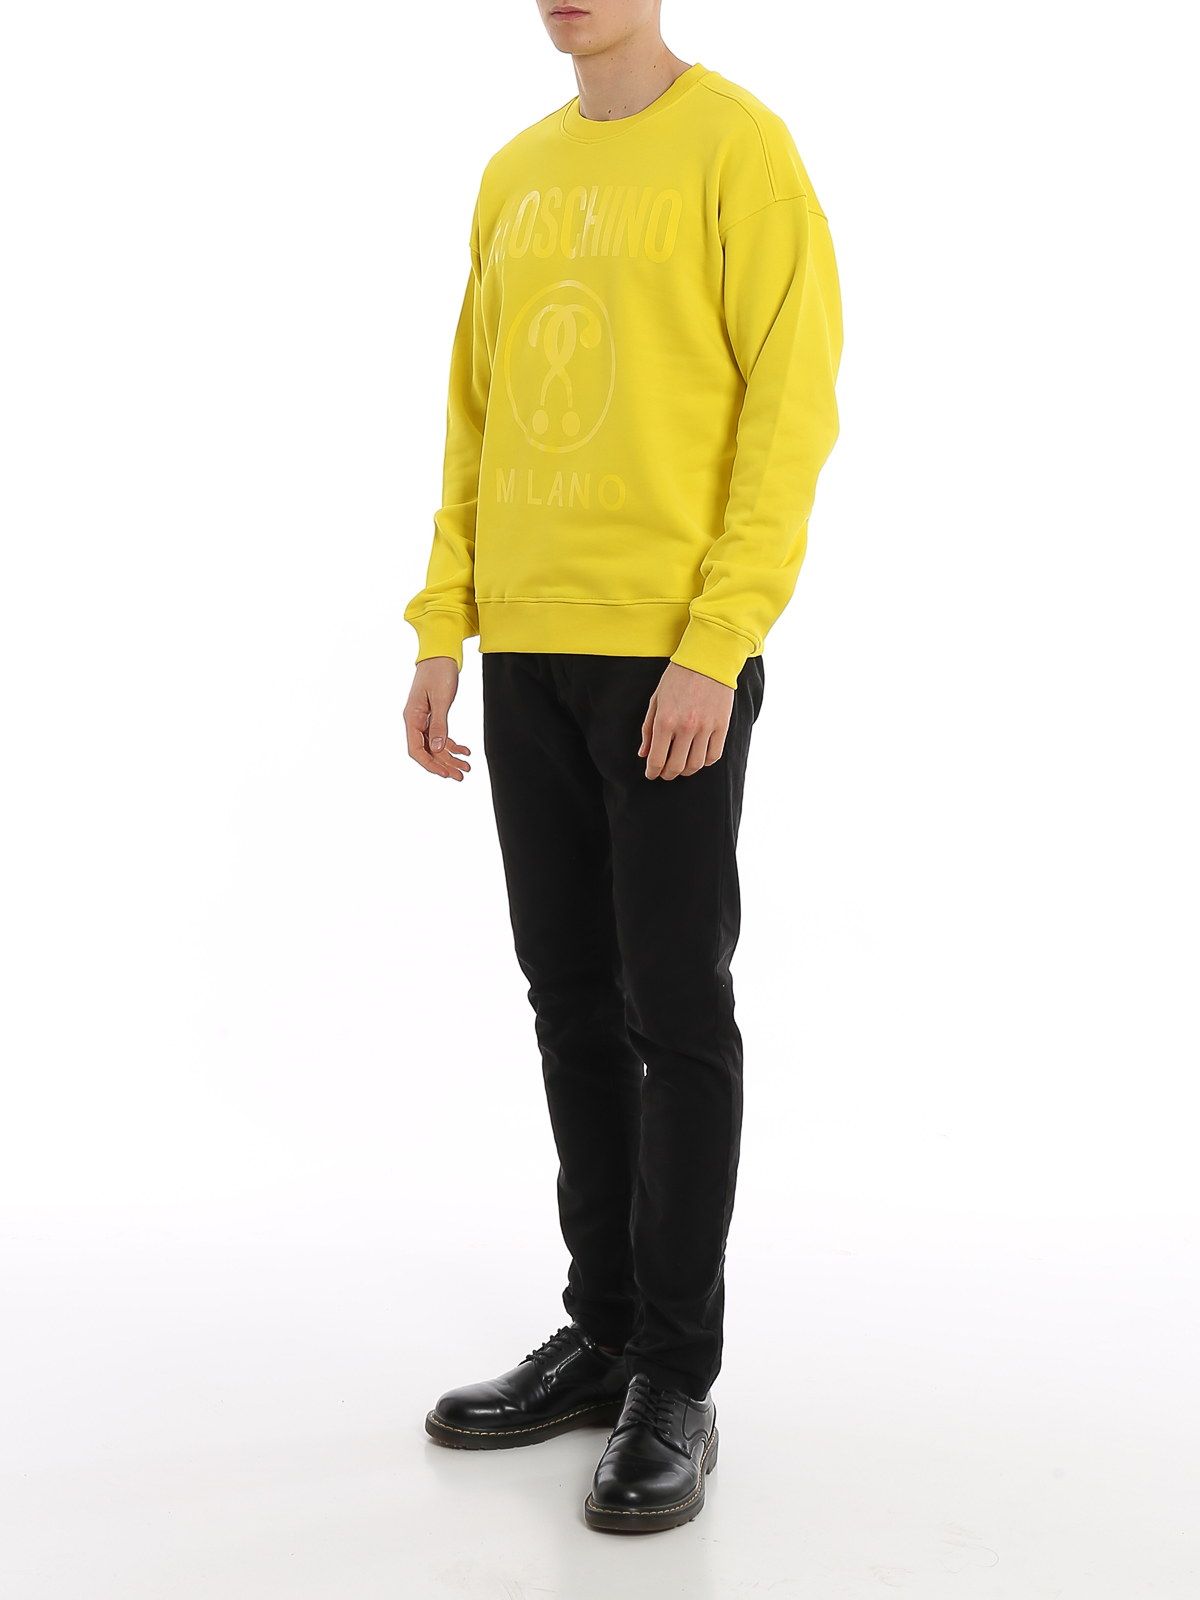 moschino yellow hoodie